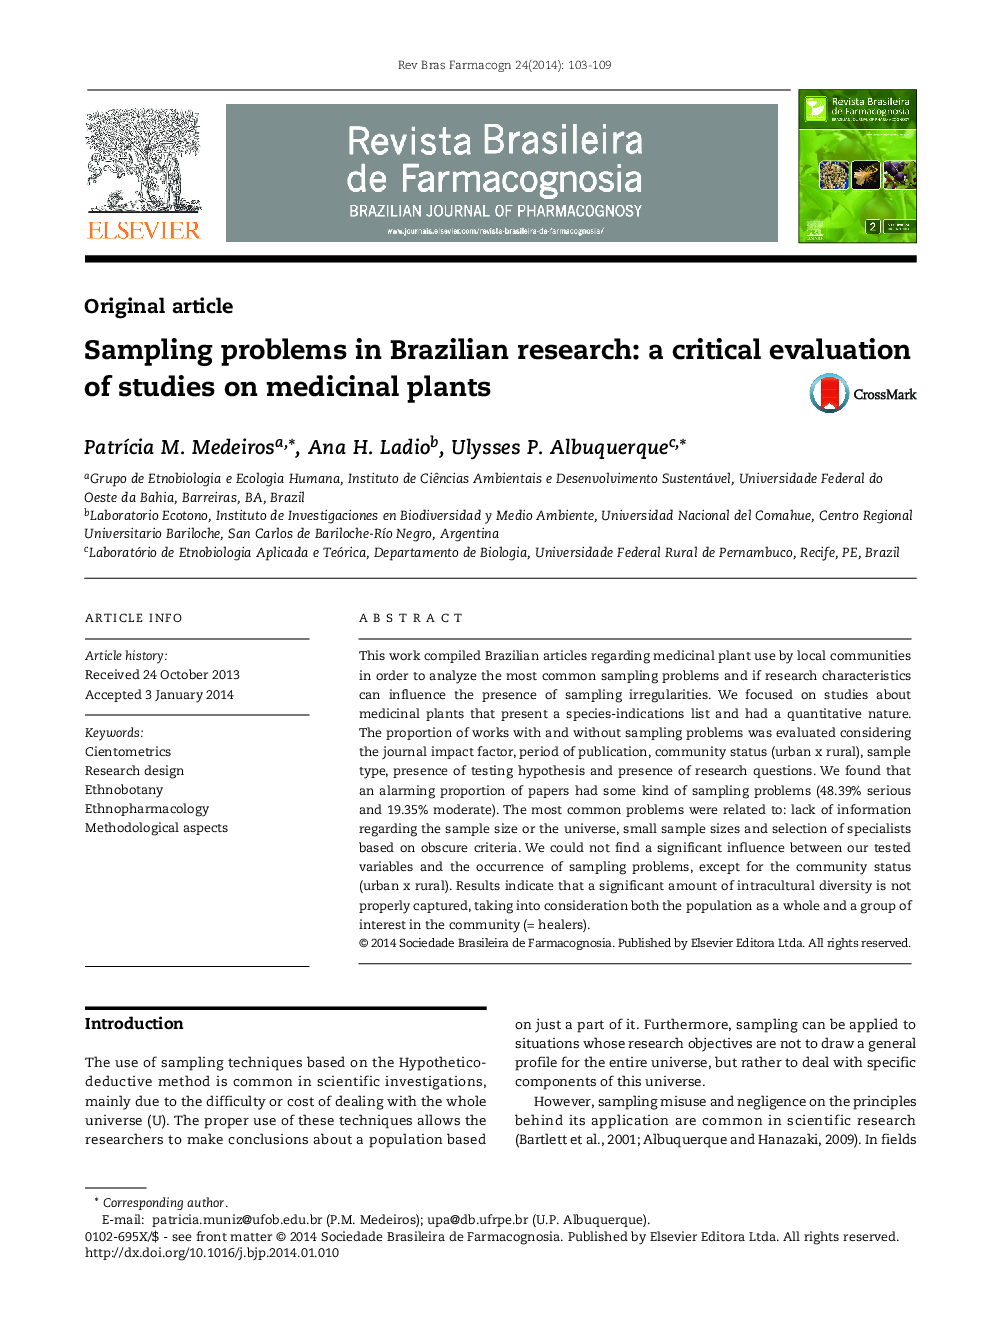 مشکلات نمونه برداری در تحقیقات برزیل: ارزیابی انتقادی از مطالعات روی گیاهان دارویی 